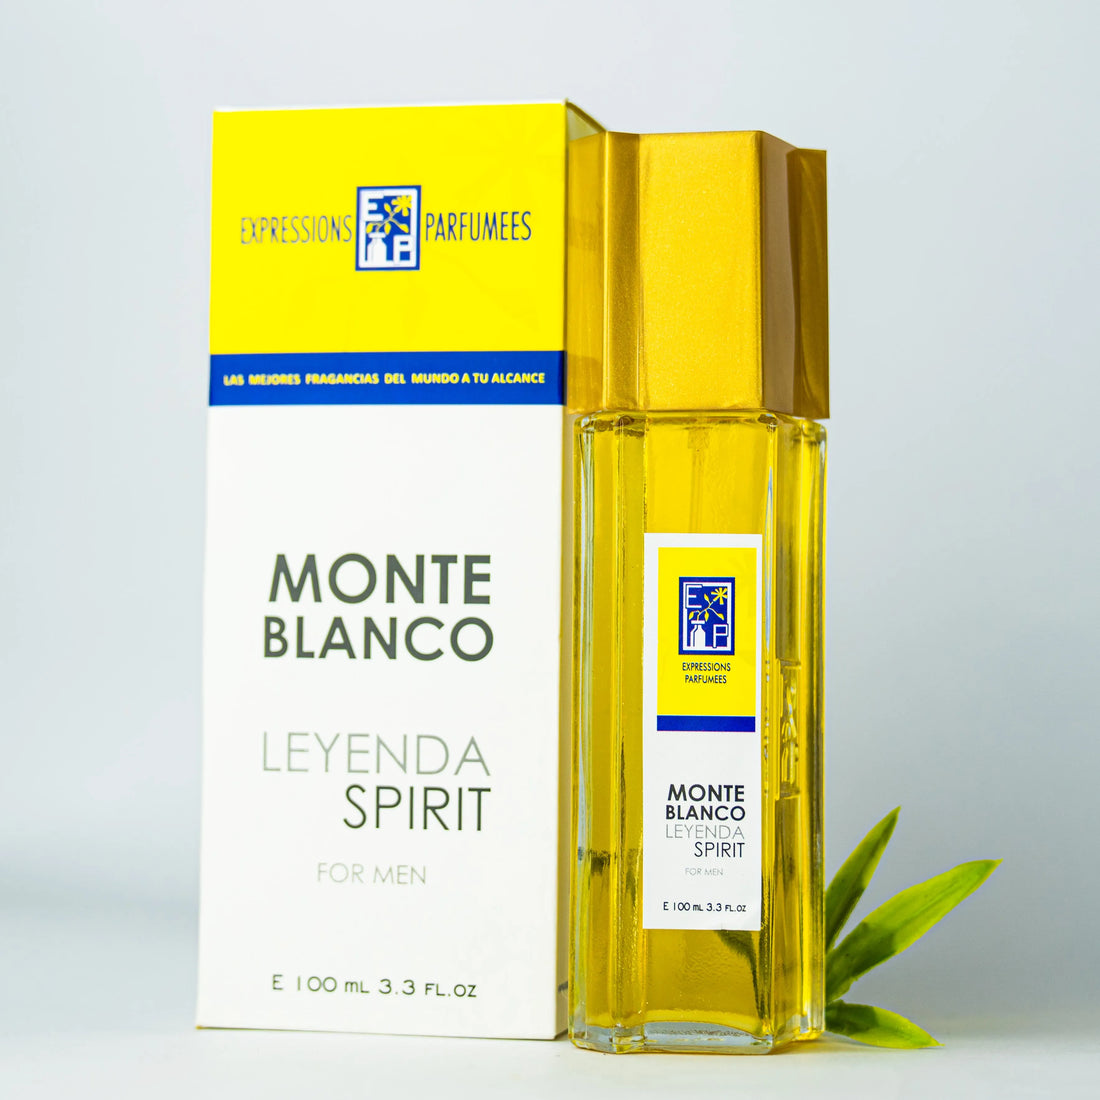 Monte Blanco Leyenda Spirit